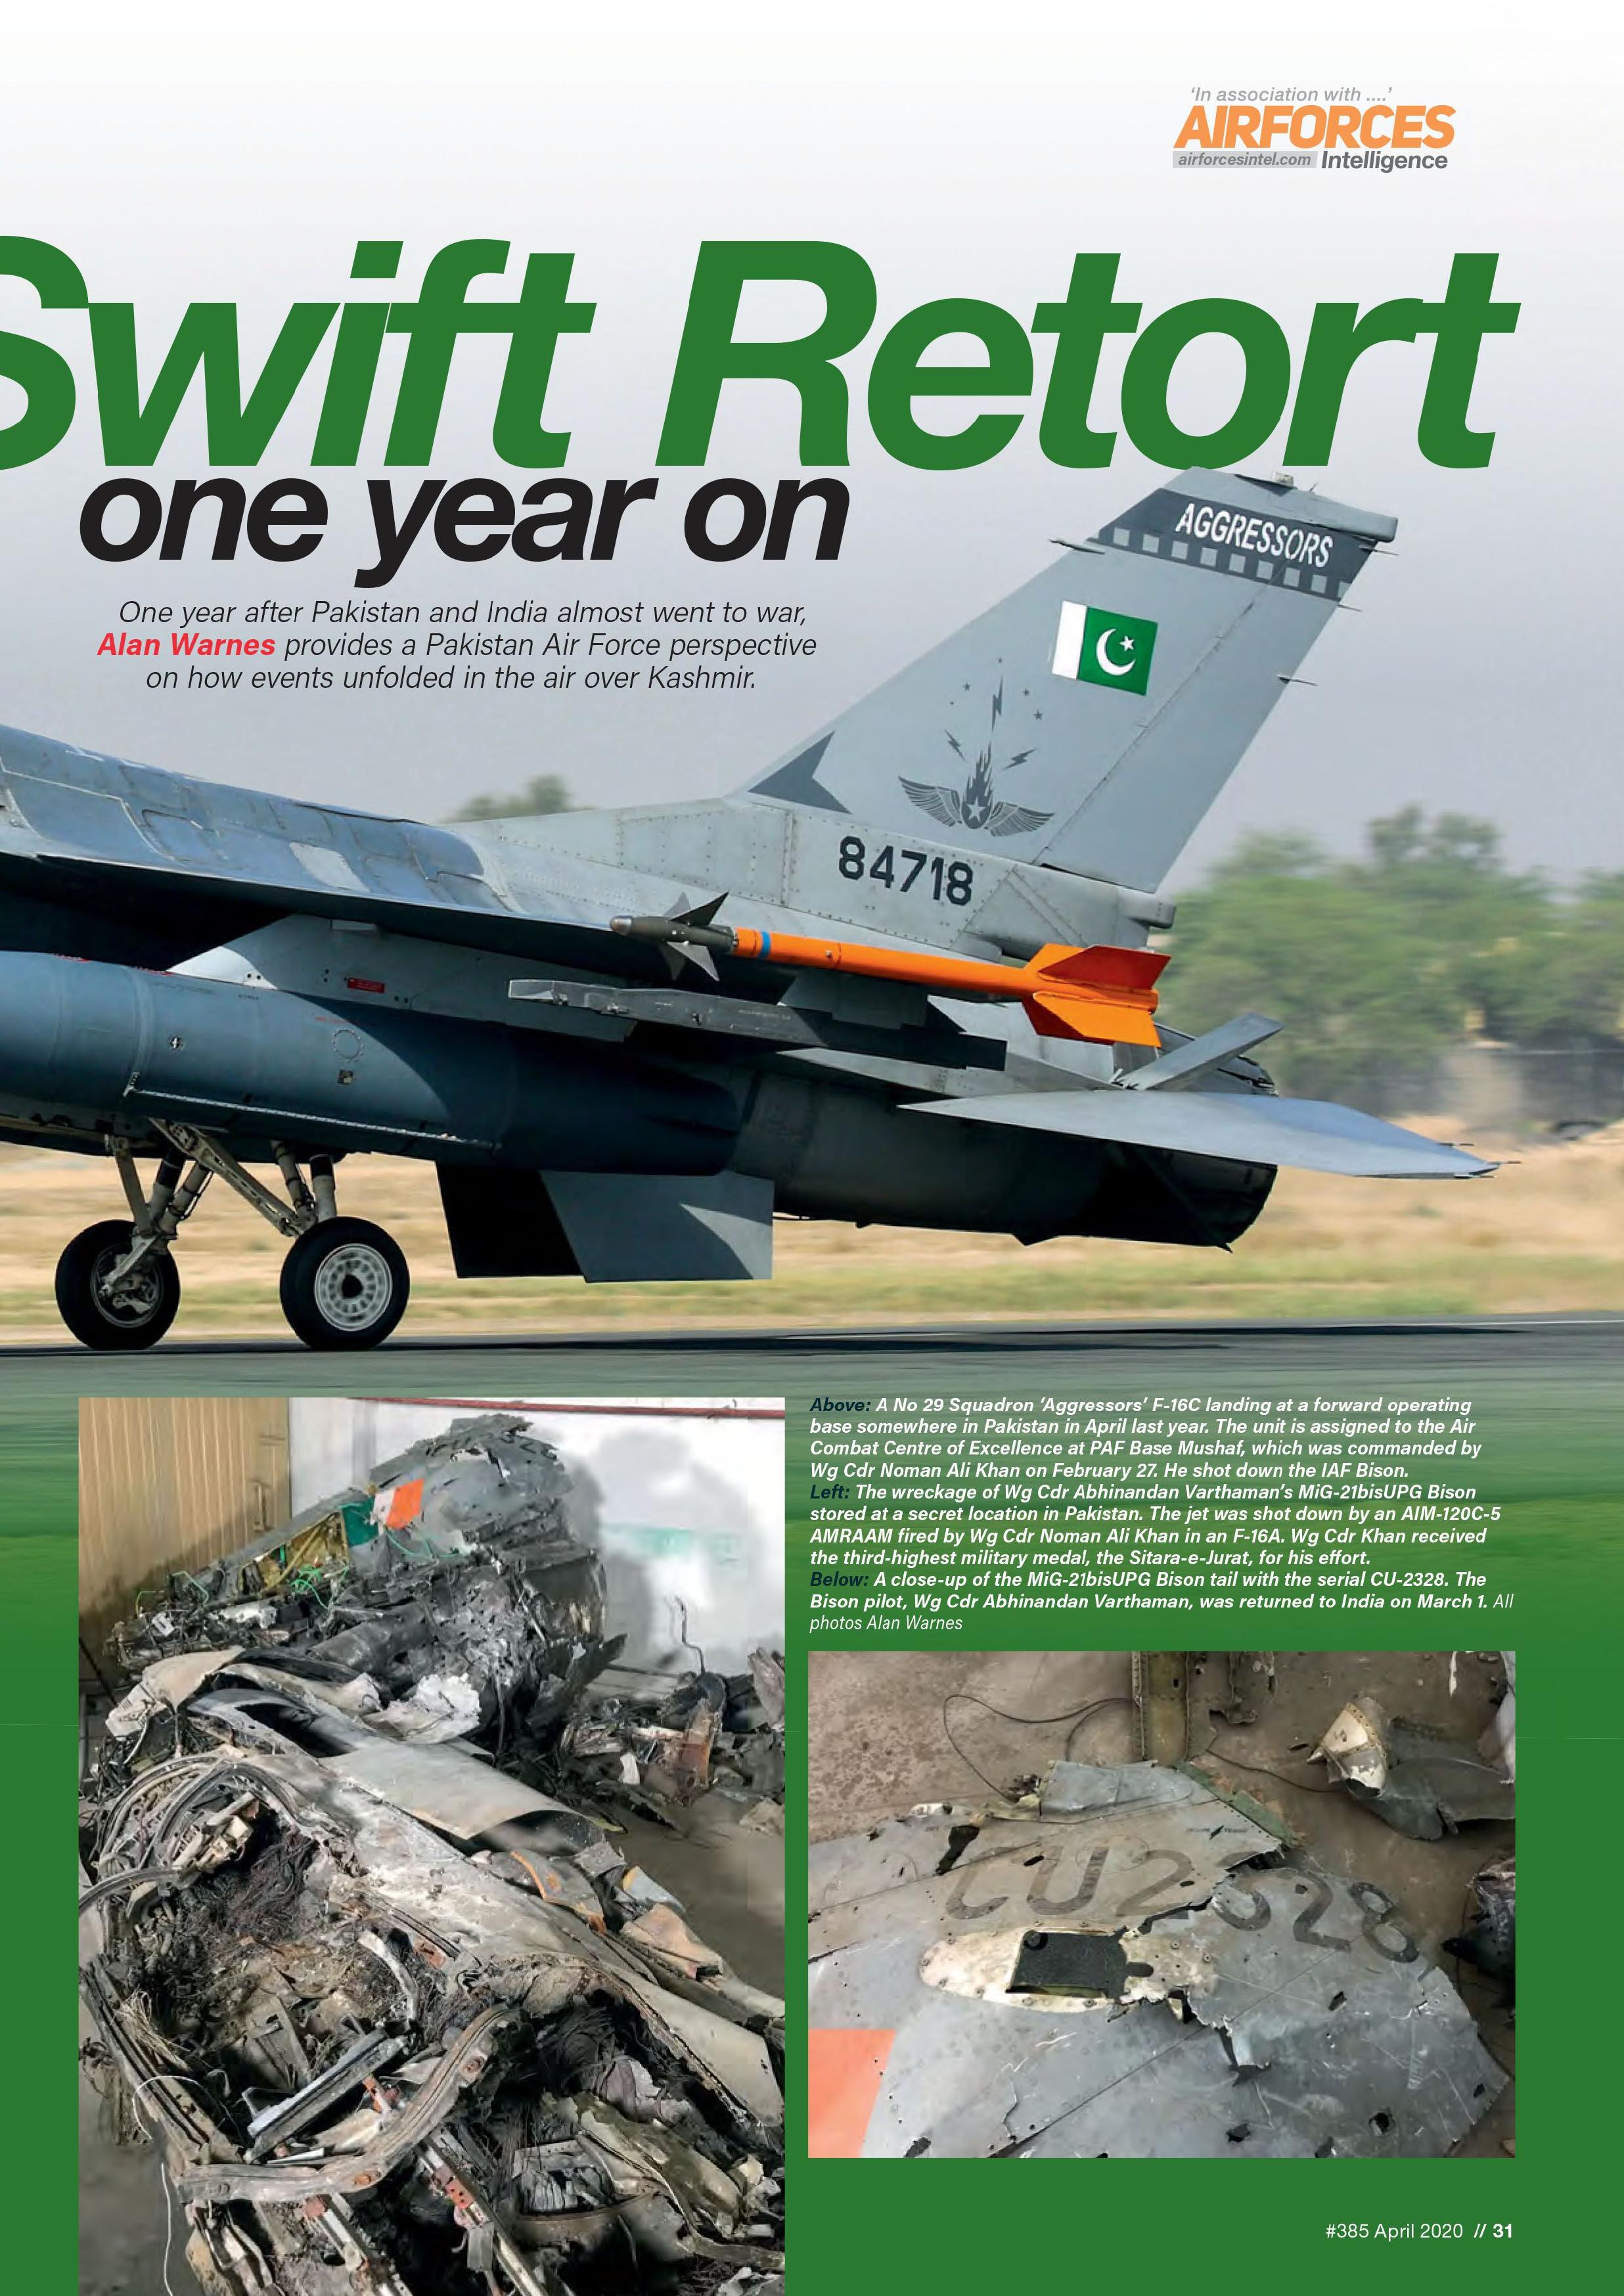 Operation-Swift-Retort-AFM-April-2020-5-page-002.jpg